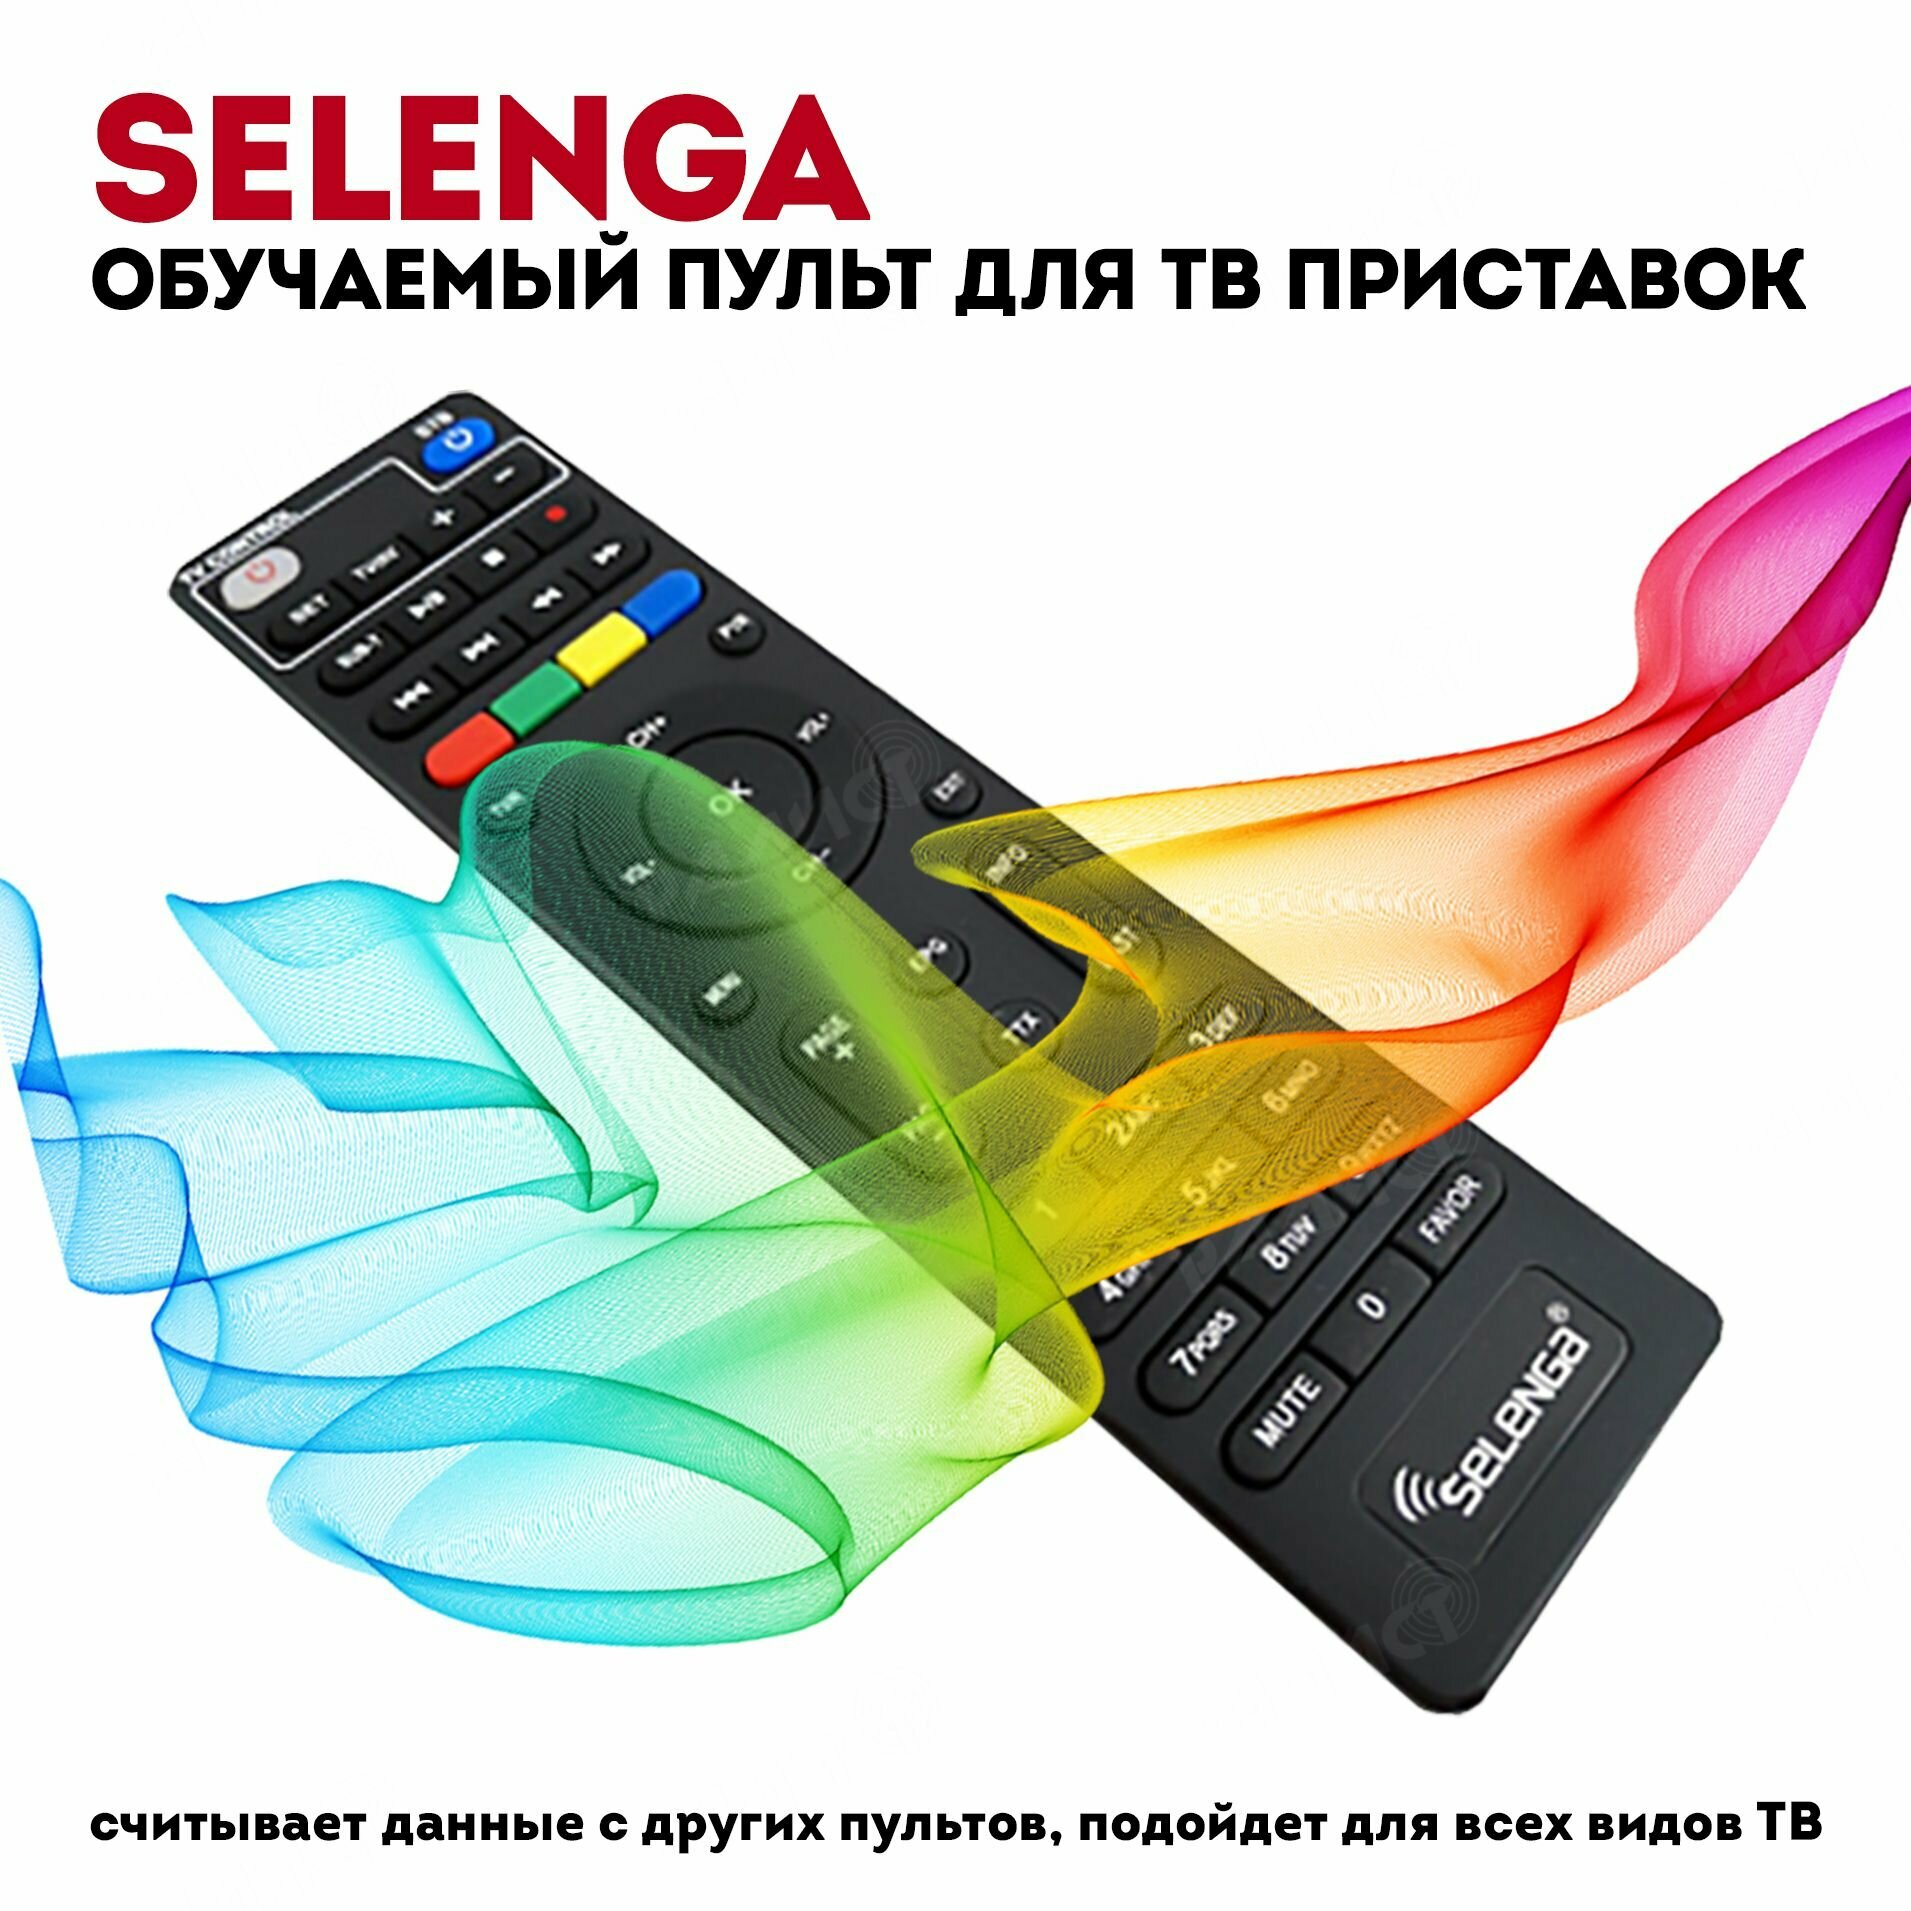 Пульт для приставки Selenga с функцией обучения ТВ